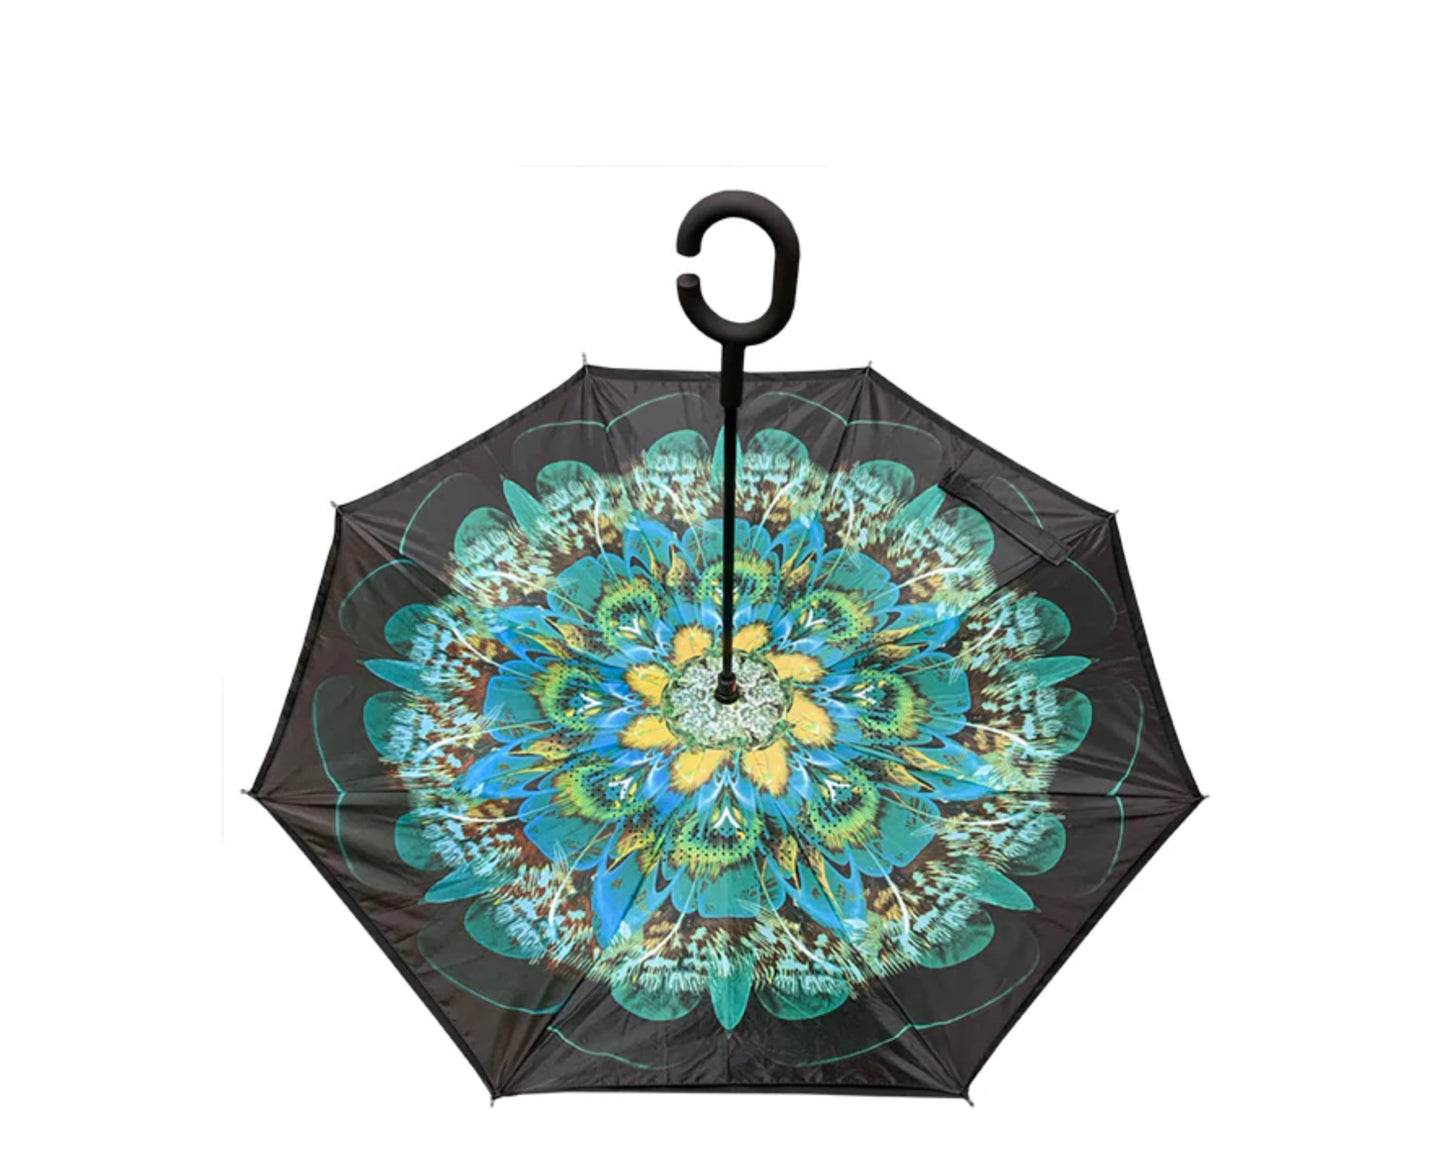 Reversed Umbrellas